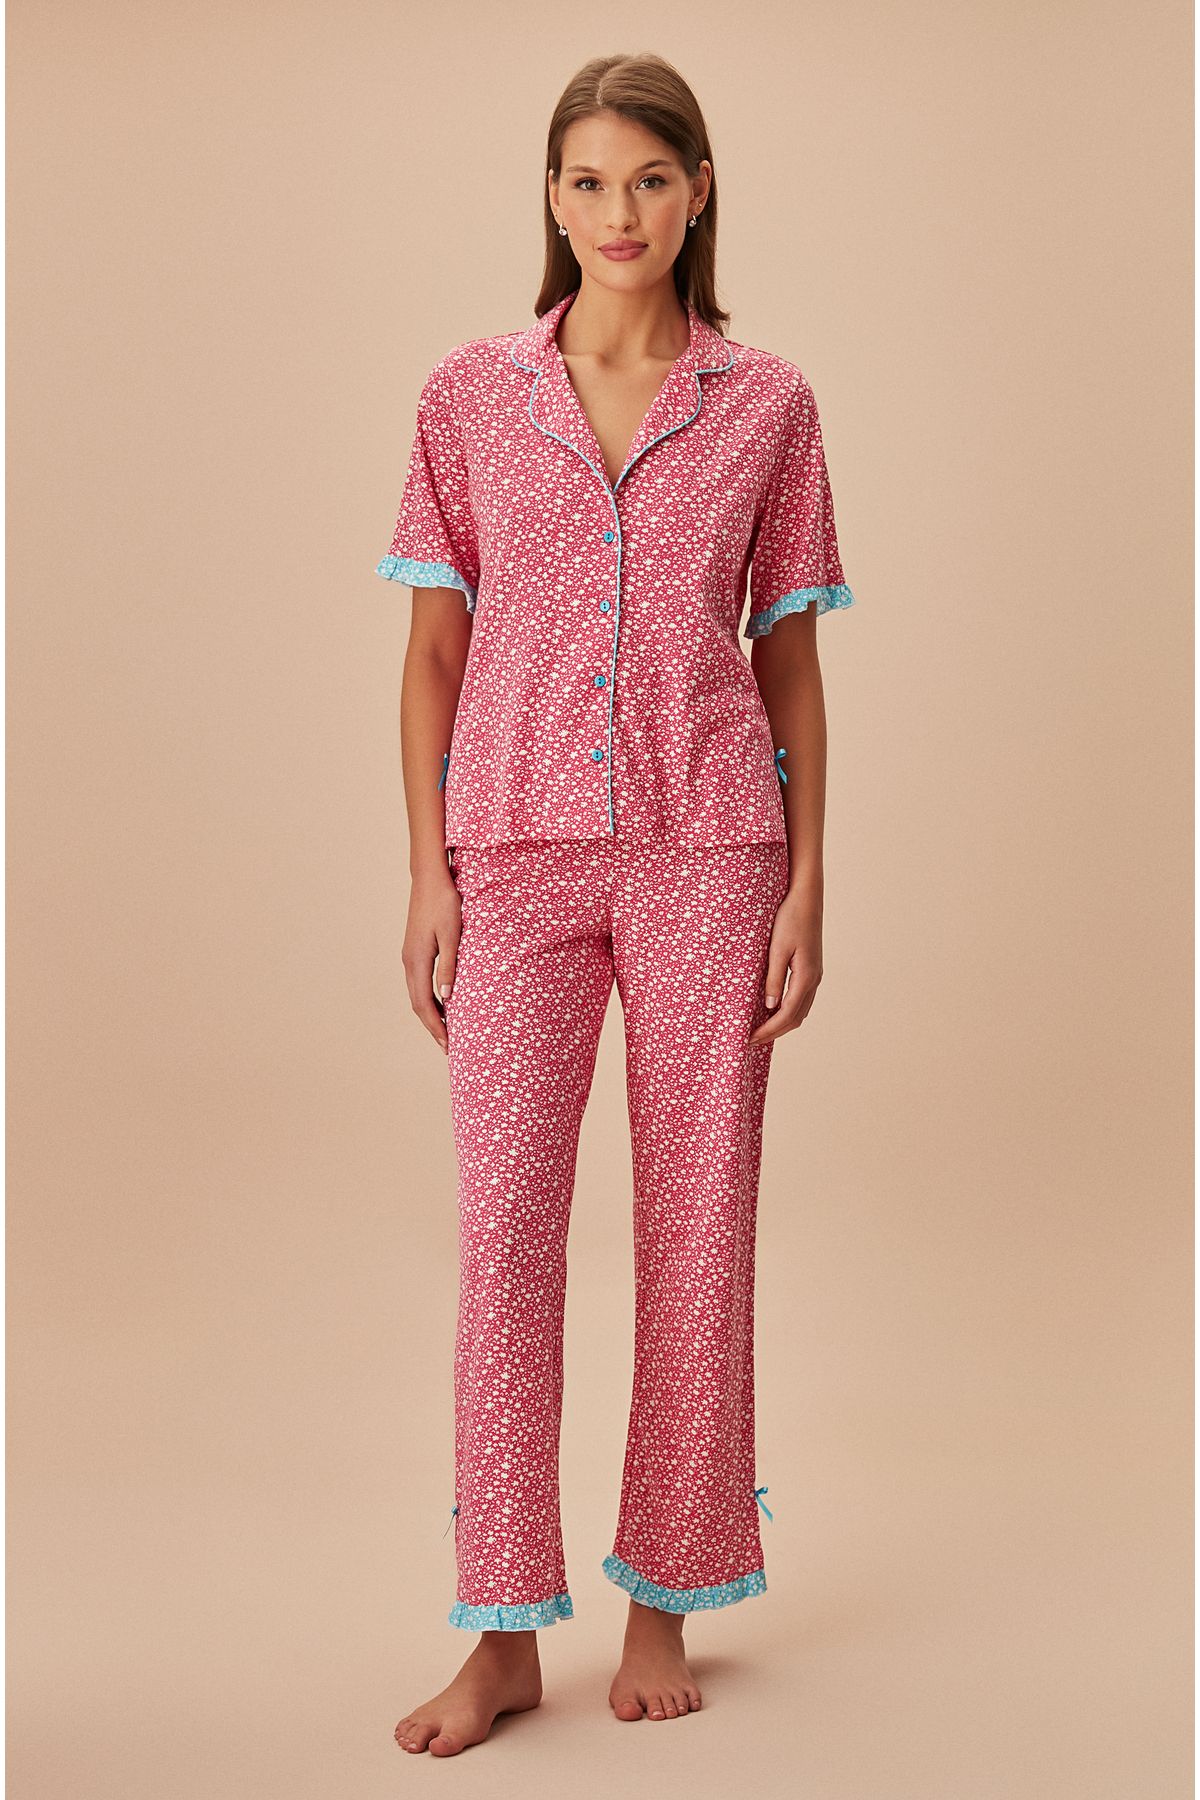 Suwen Colourful Maskülen Pijama Takımı